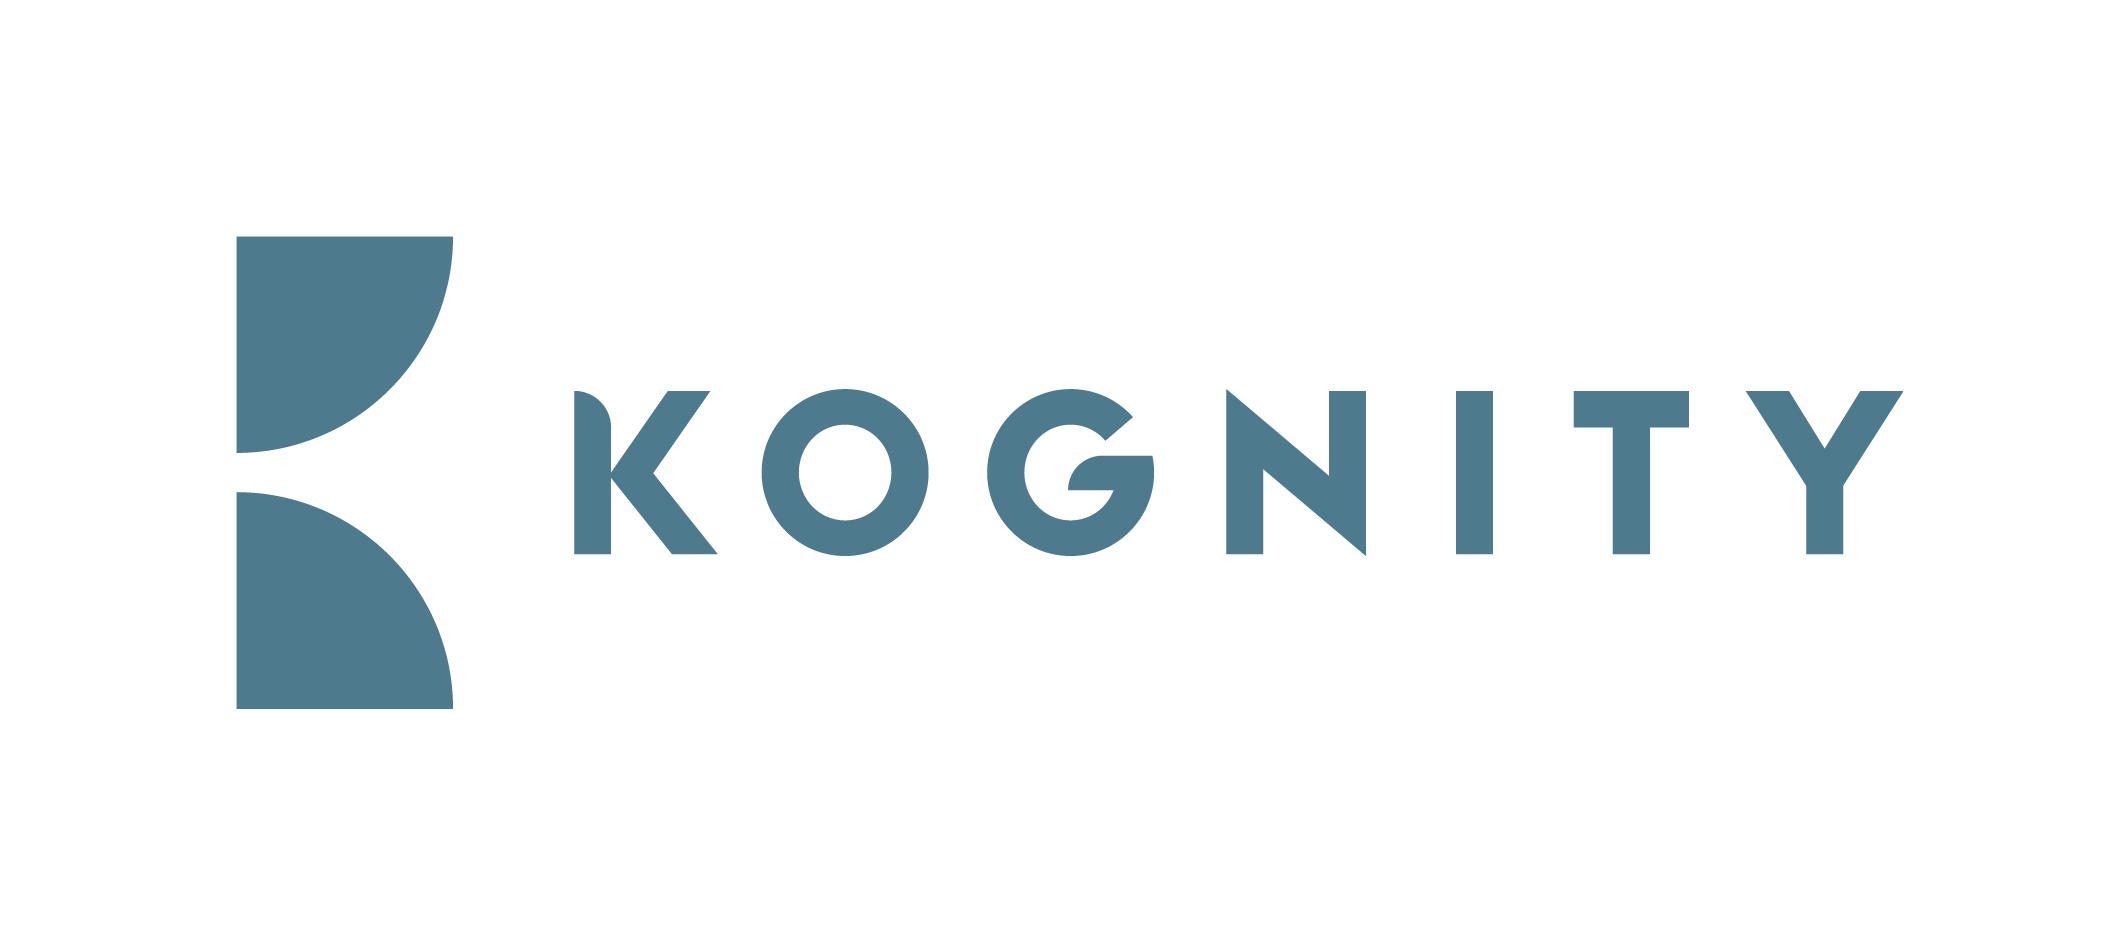 Kognity Logotype